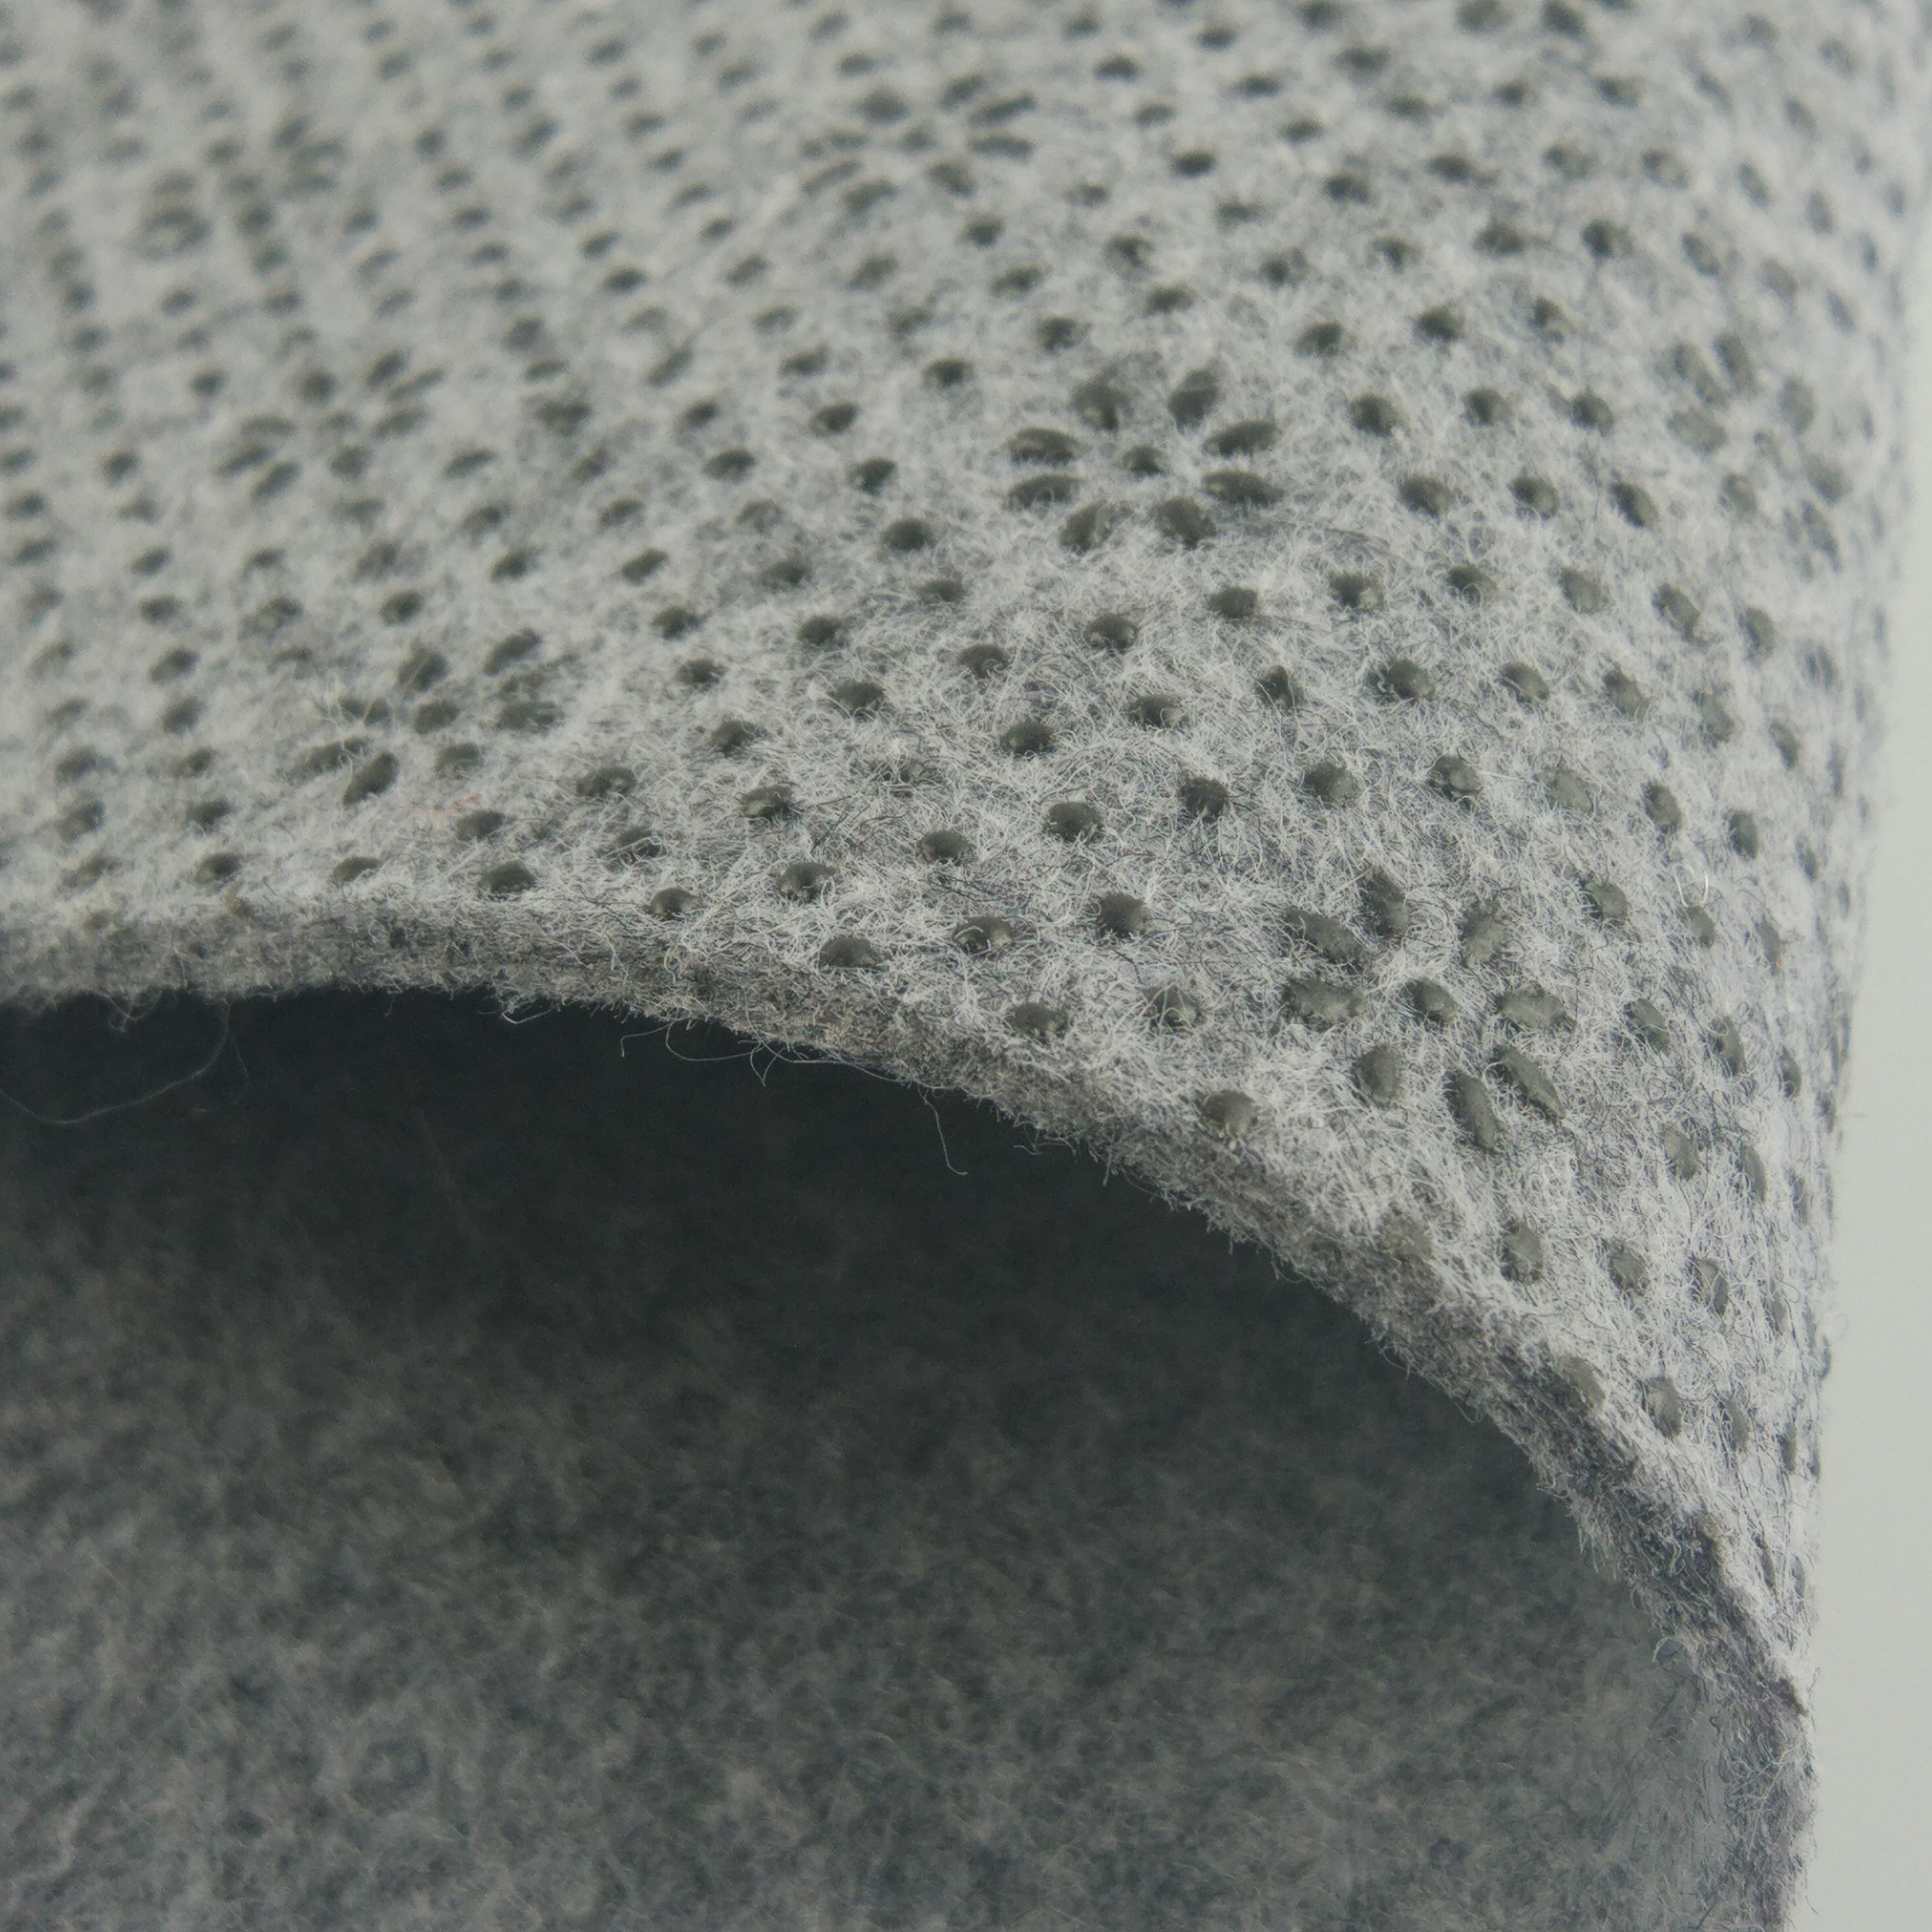 6 'x 8' - Двухслойный войлочный коврик + резиновый противоскользящий коврик |Противоскользящая накладка защищает твердый пол, фиксирует положение ковра, снижает уровень шума.